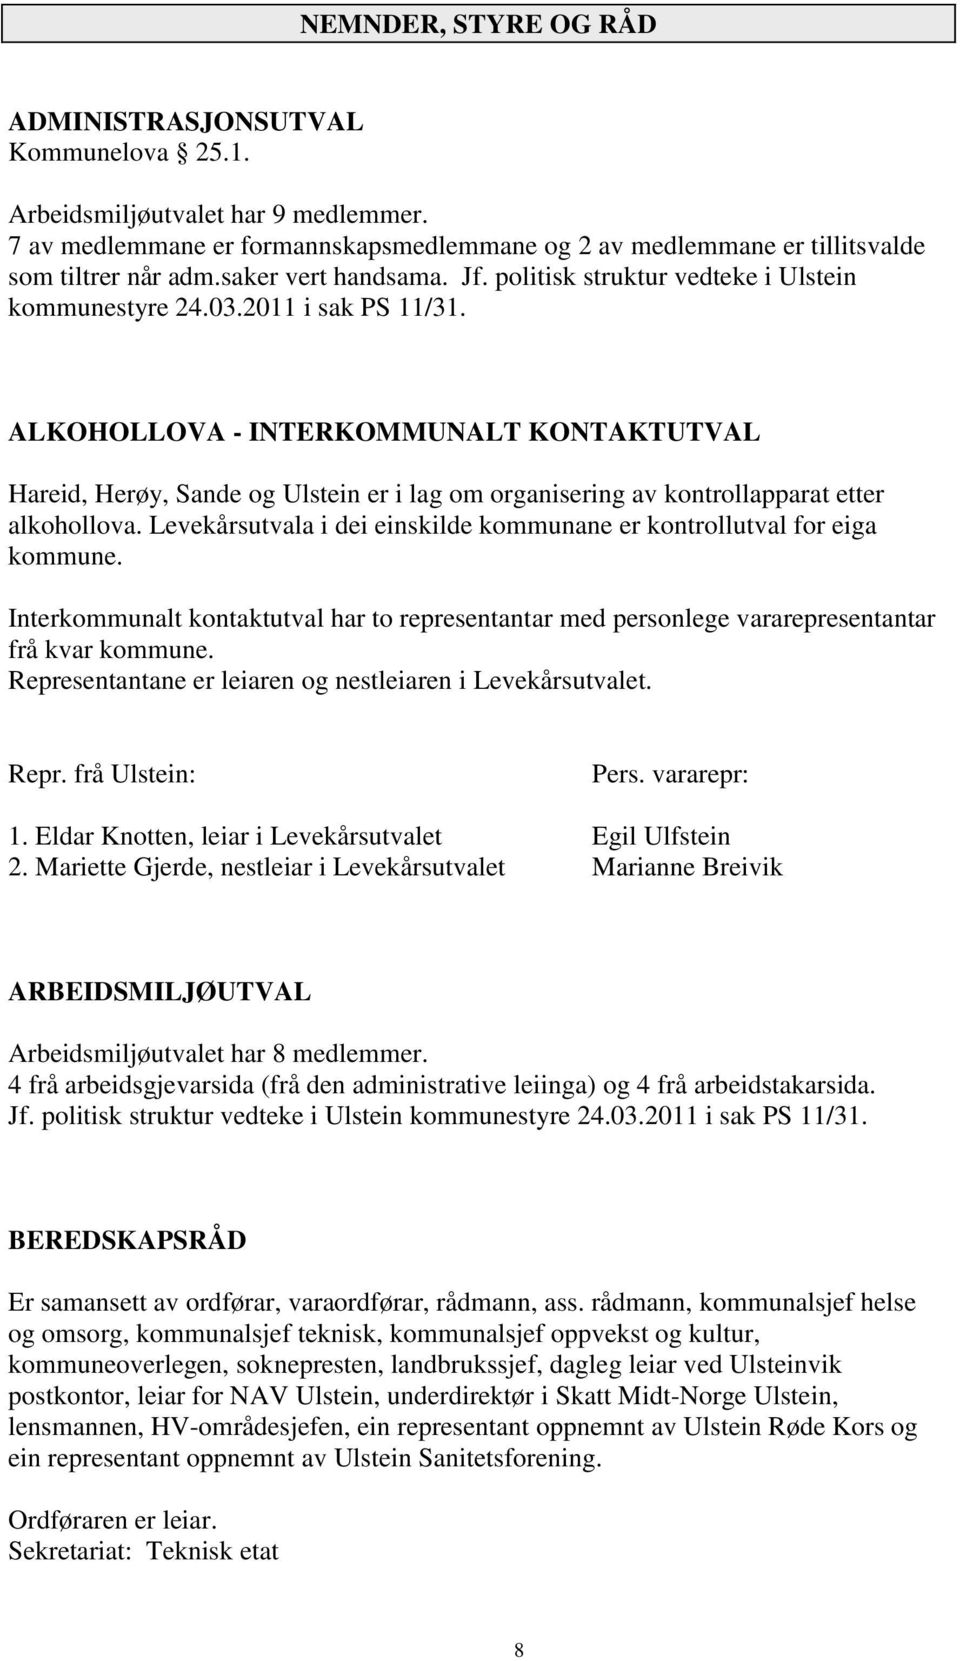 ALKOHOLLOVA - INTERKOMMUNALT KONTAKTUTVAL Hareid, Herøy, Sande og Ulstein er i lag om organisering av kontrollapparat etter alkohollova.